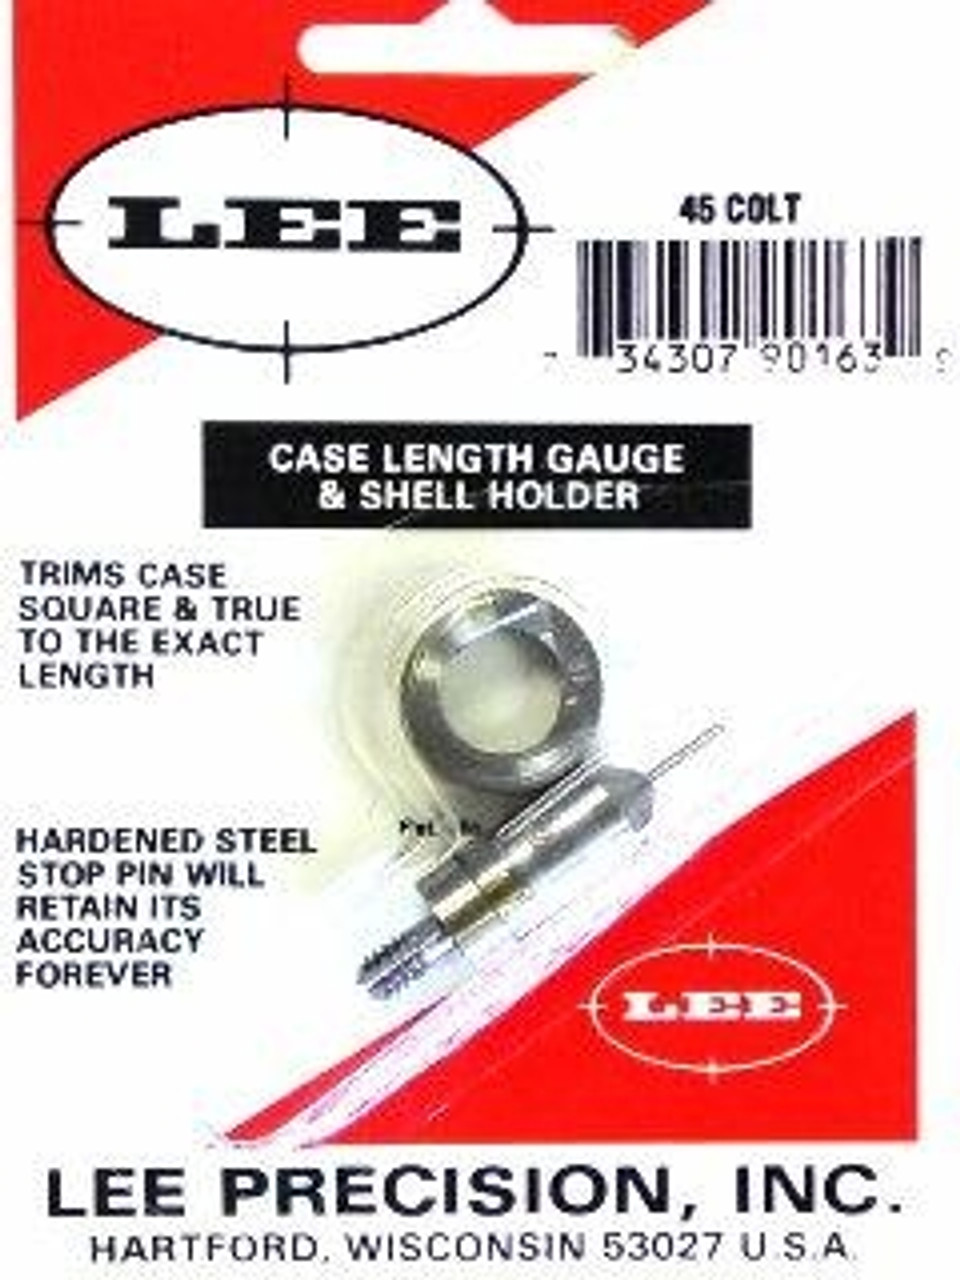 Lee Precision 45 Colt Case Length Gauge & Shell Holder